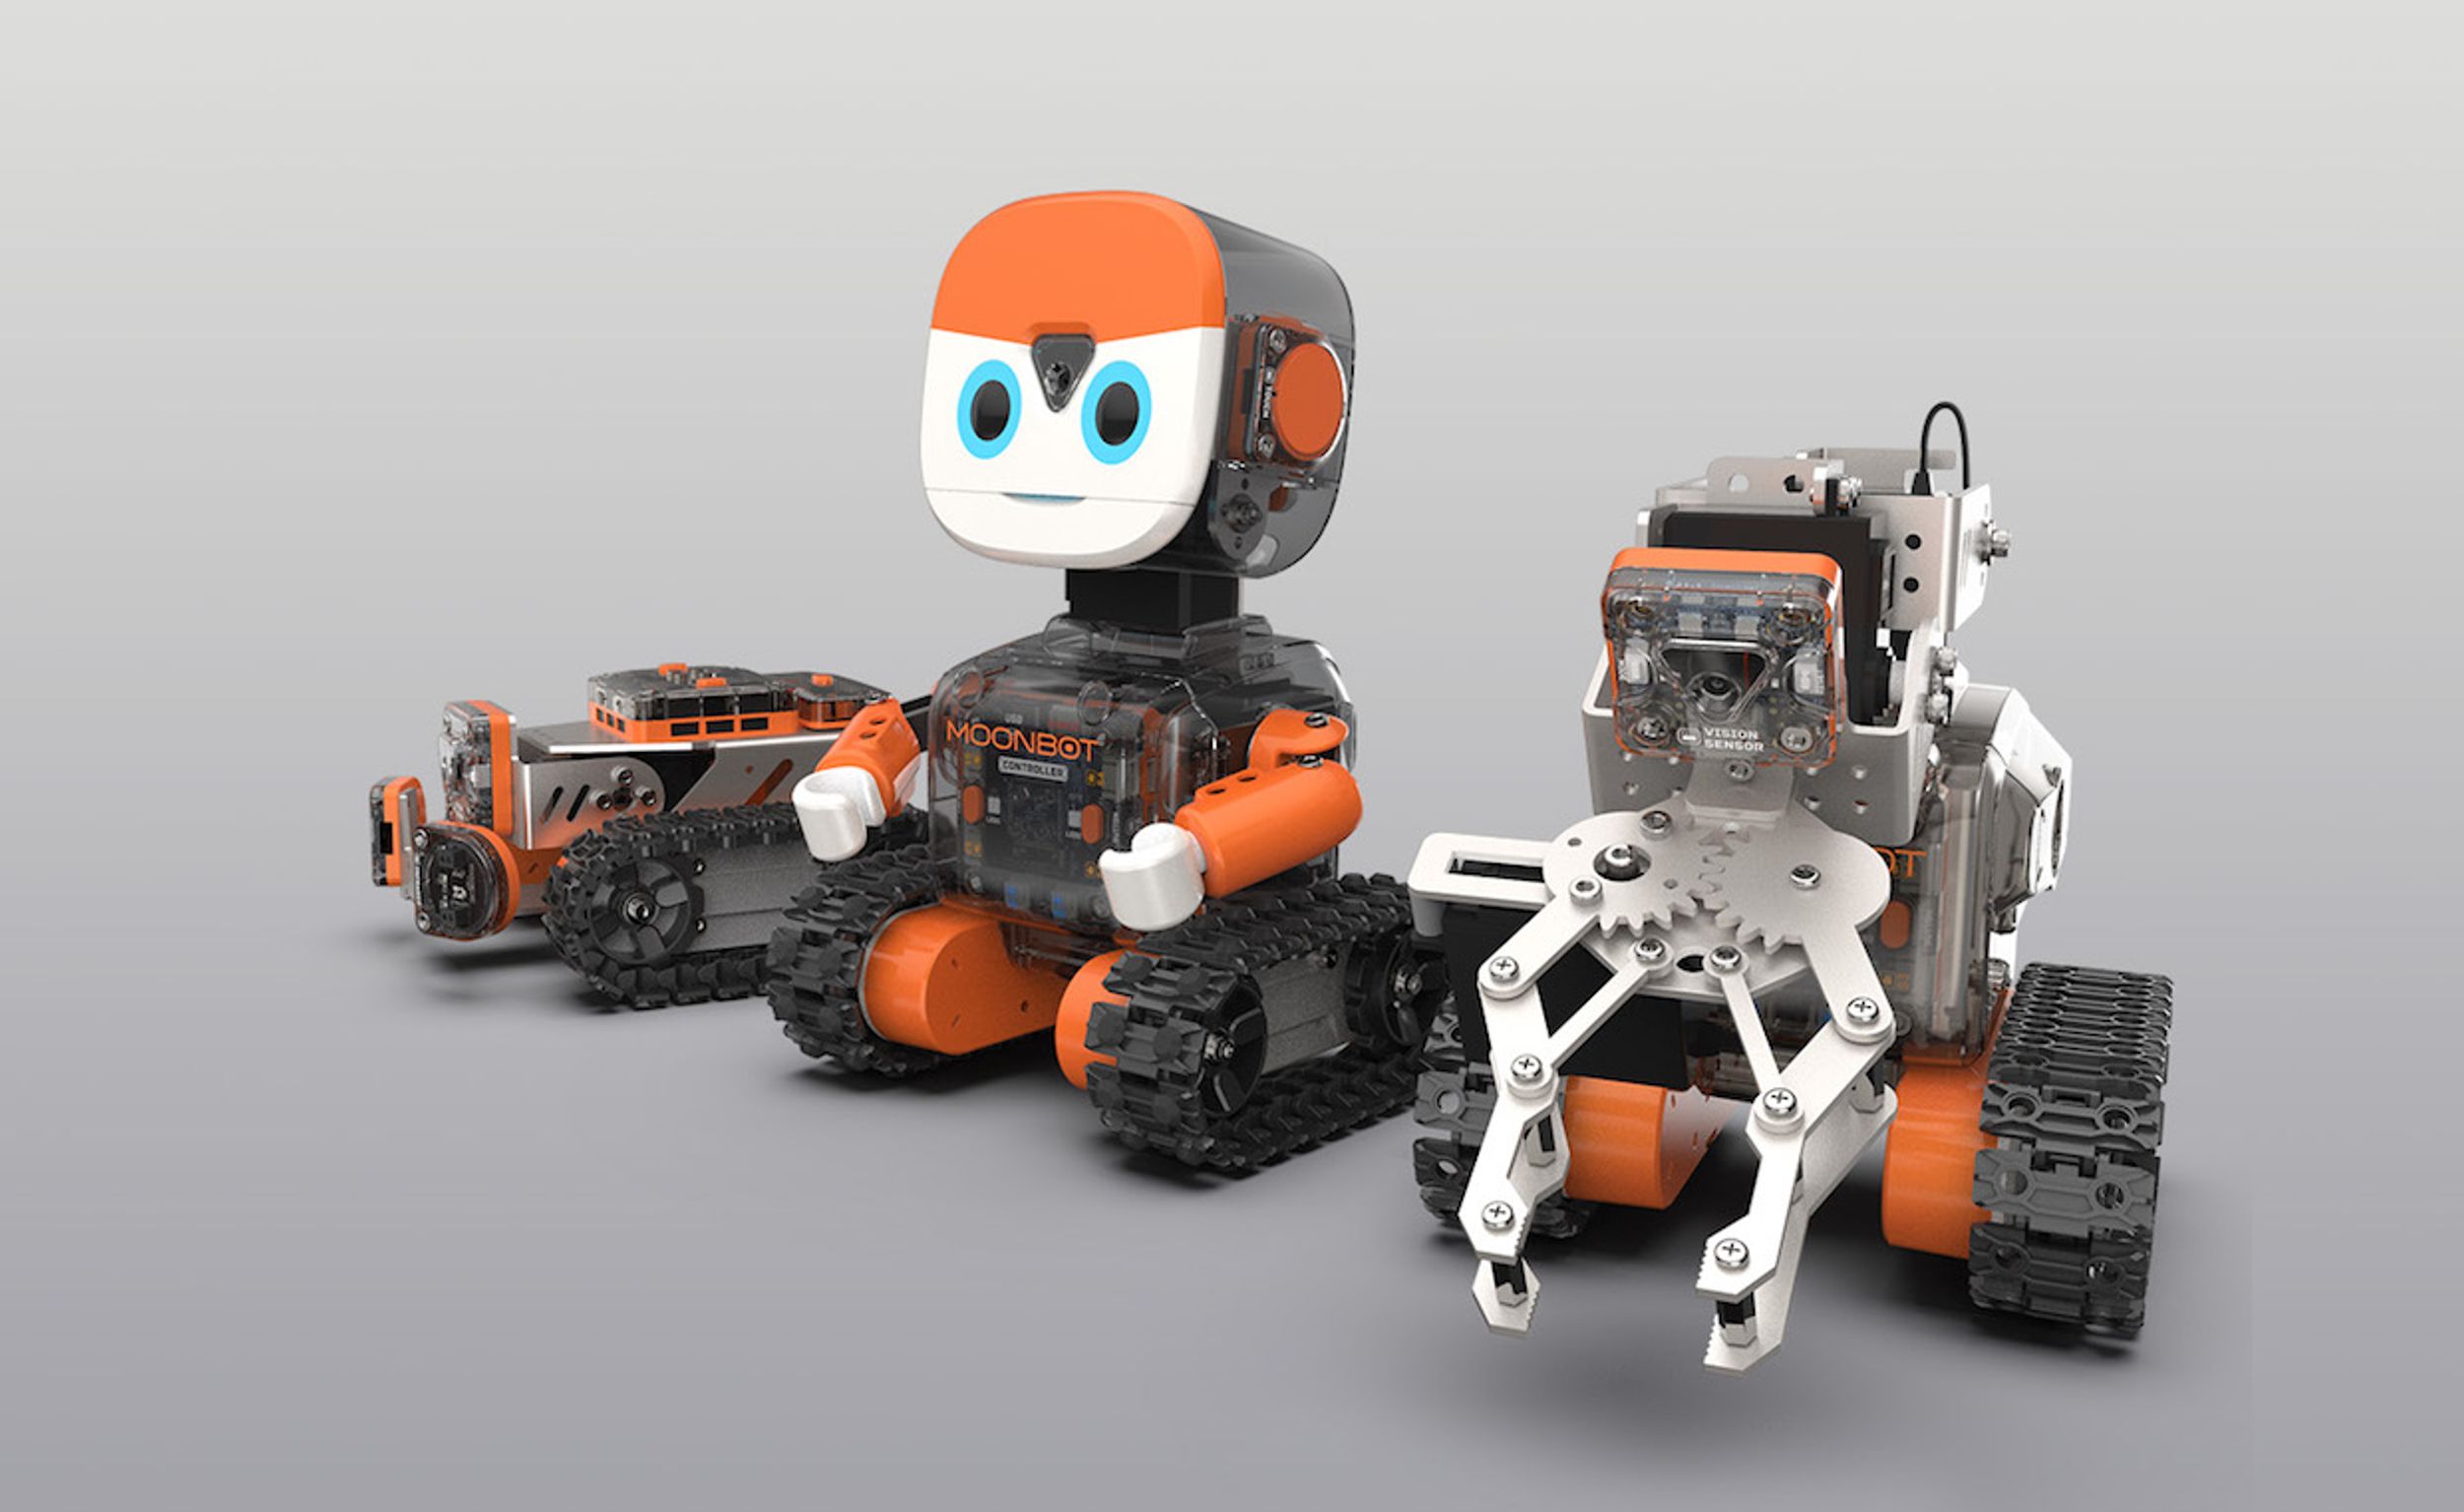 Moonbot robot kit